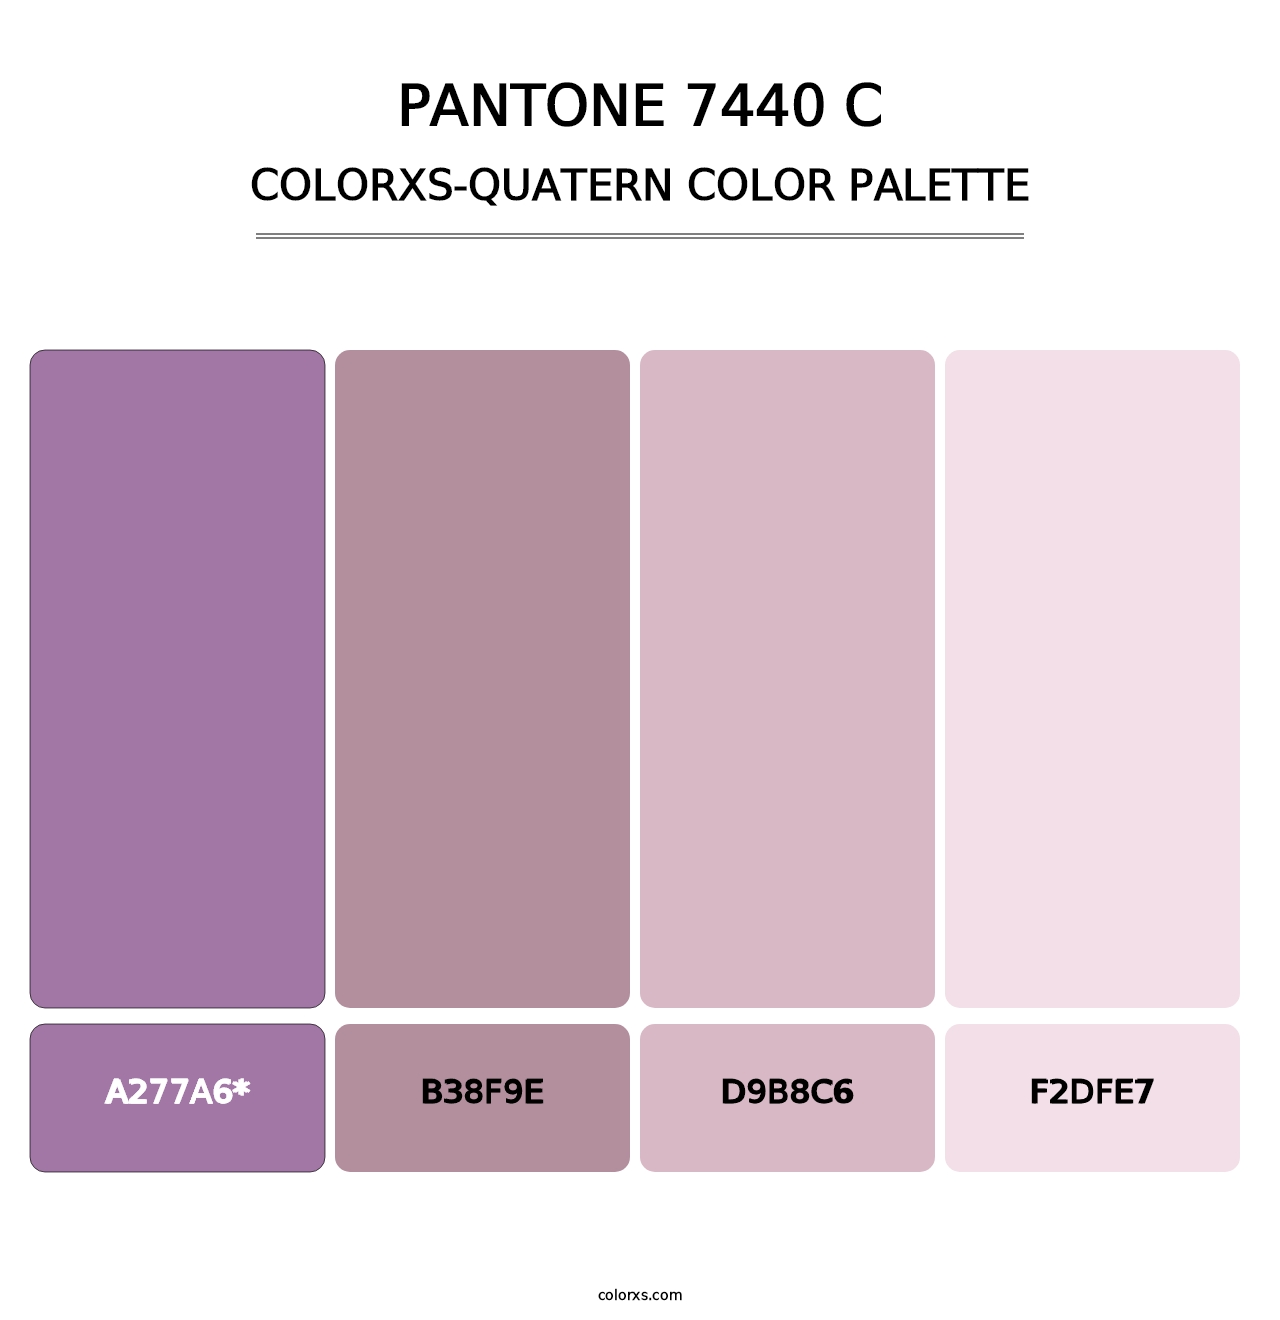 PANTONE 7440 C - Colorxs Quatern Palette